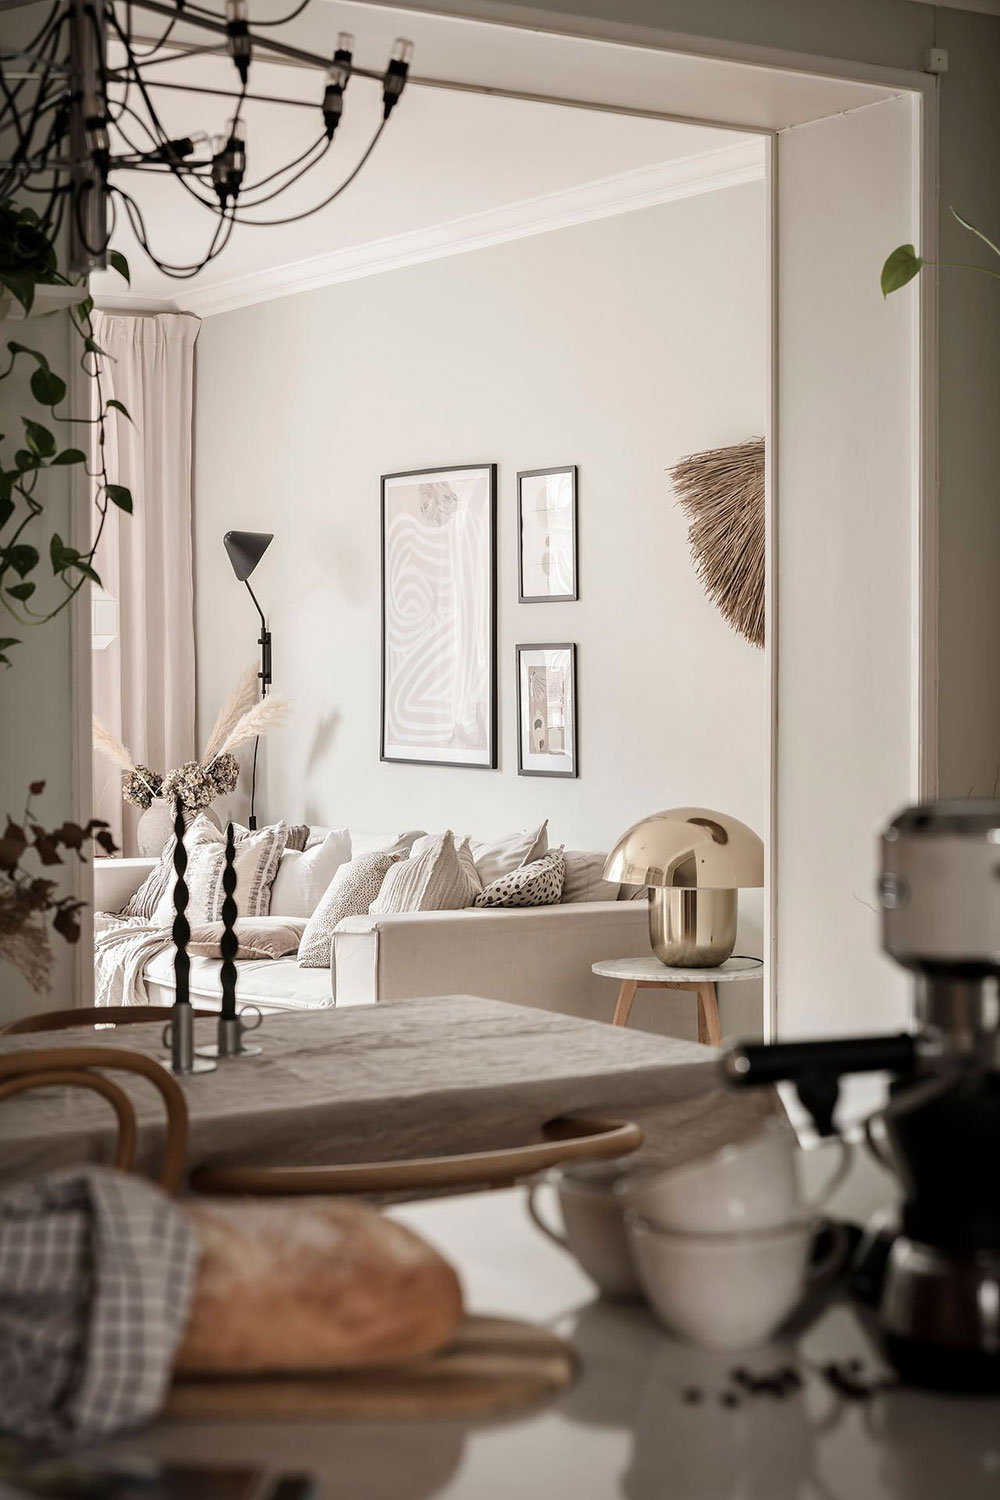 Тёплый и утончённый интерьер шведской квартиры (91 кв. м)